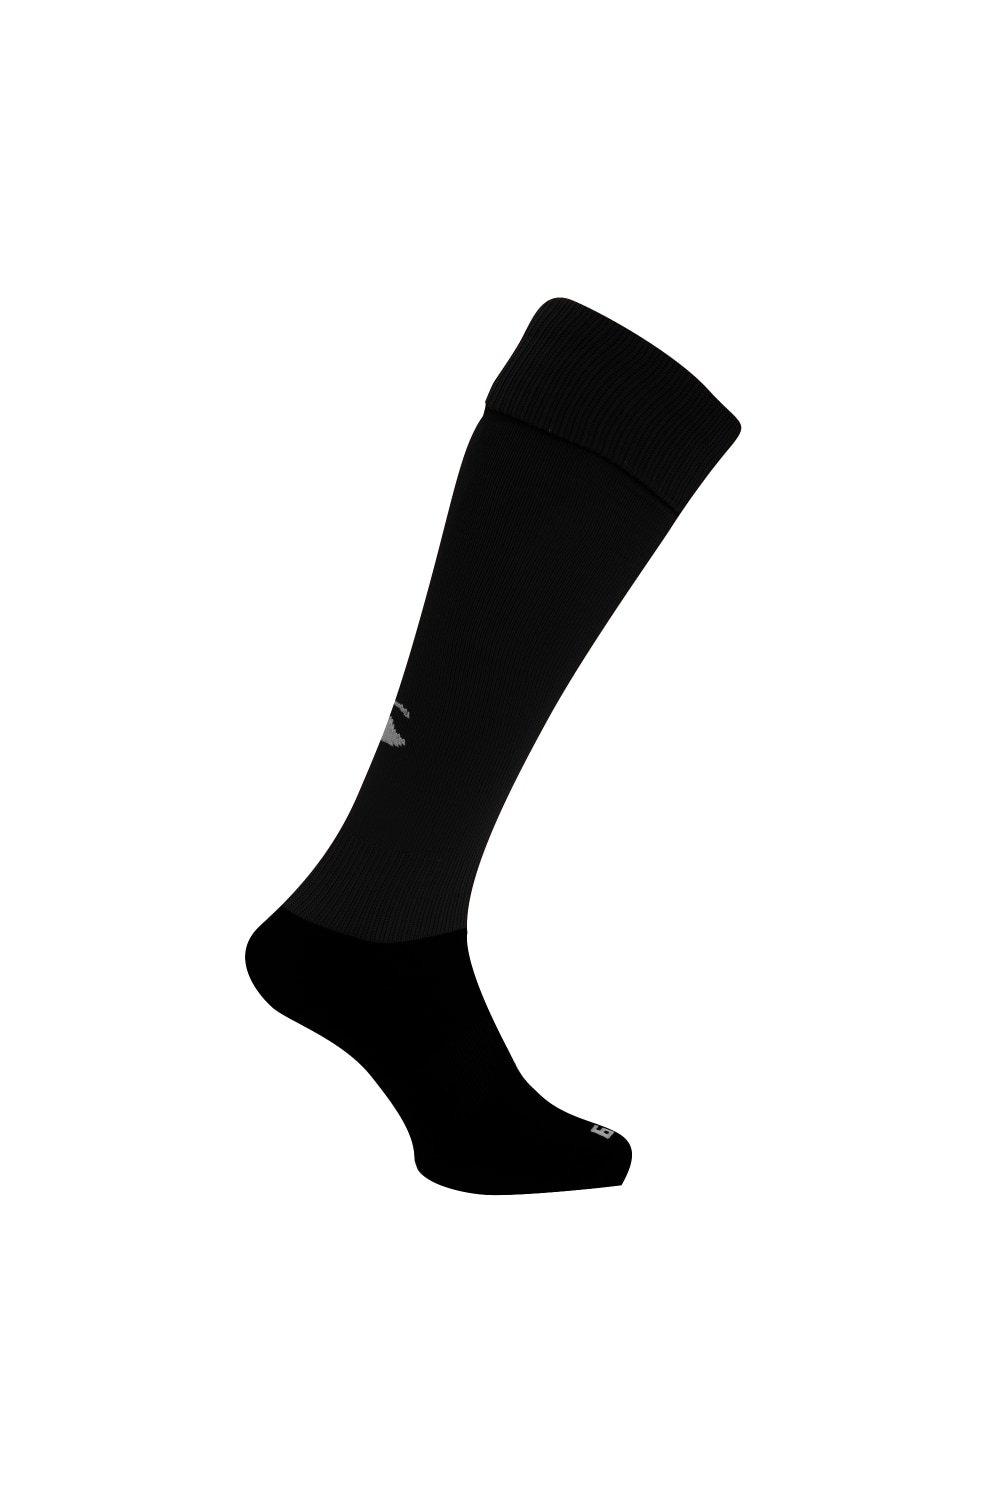 Спортивные носки для игры в регби Canterbury, черный